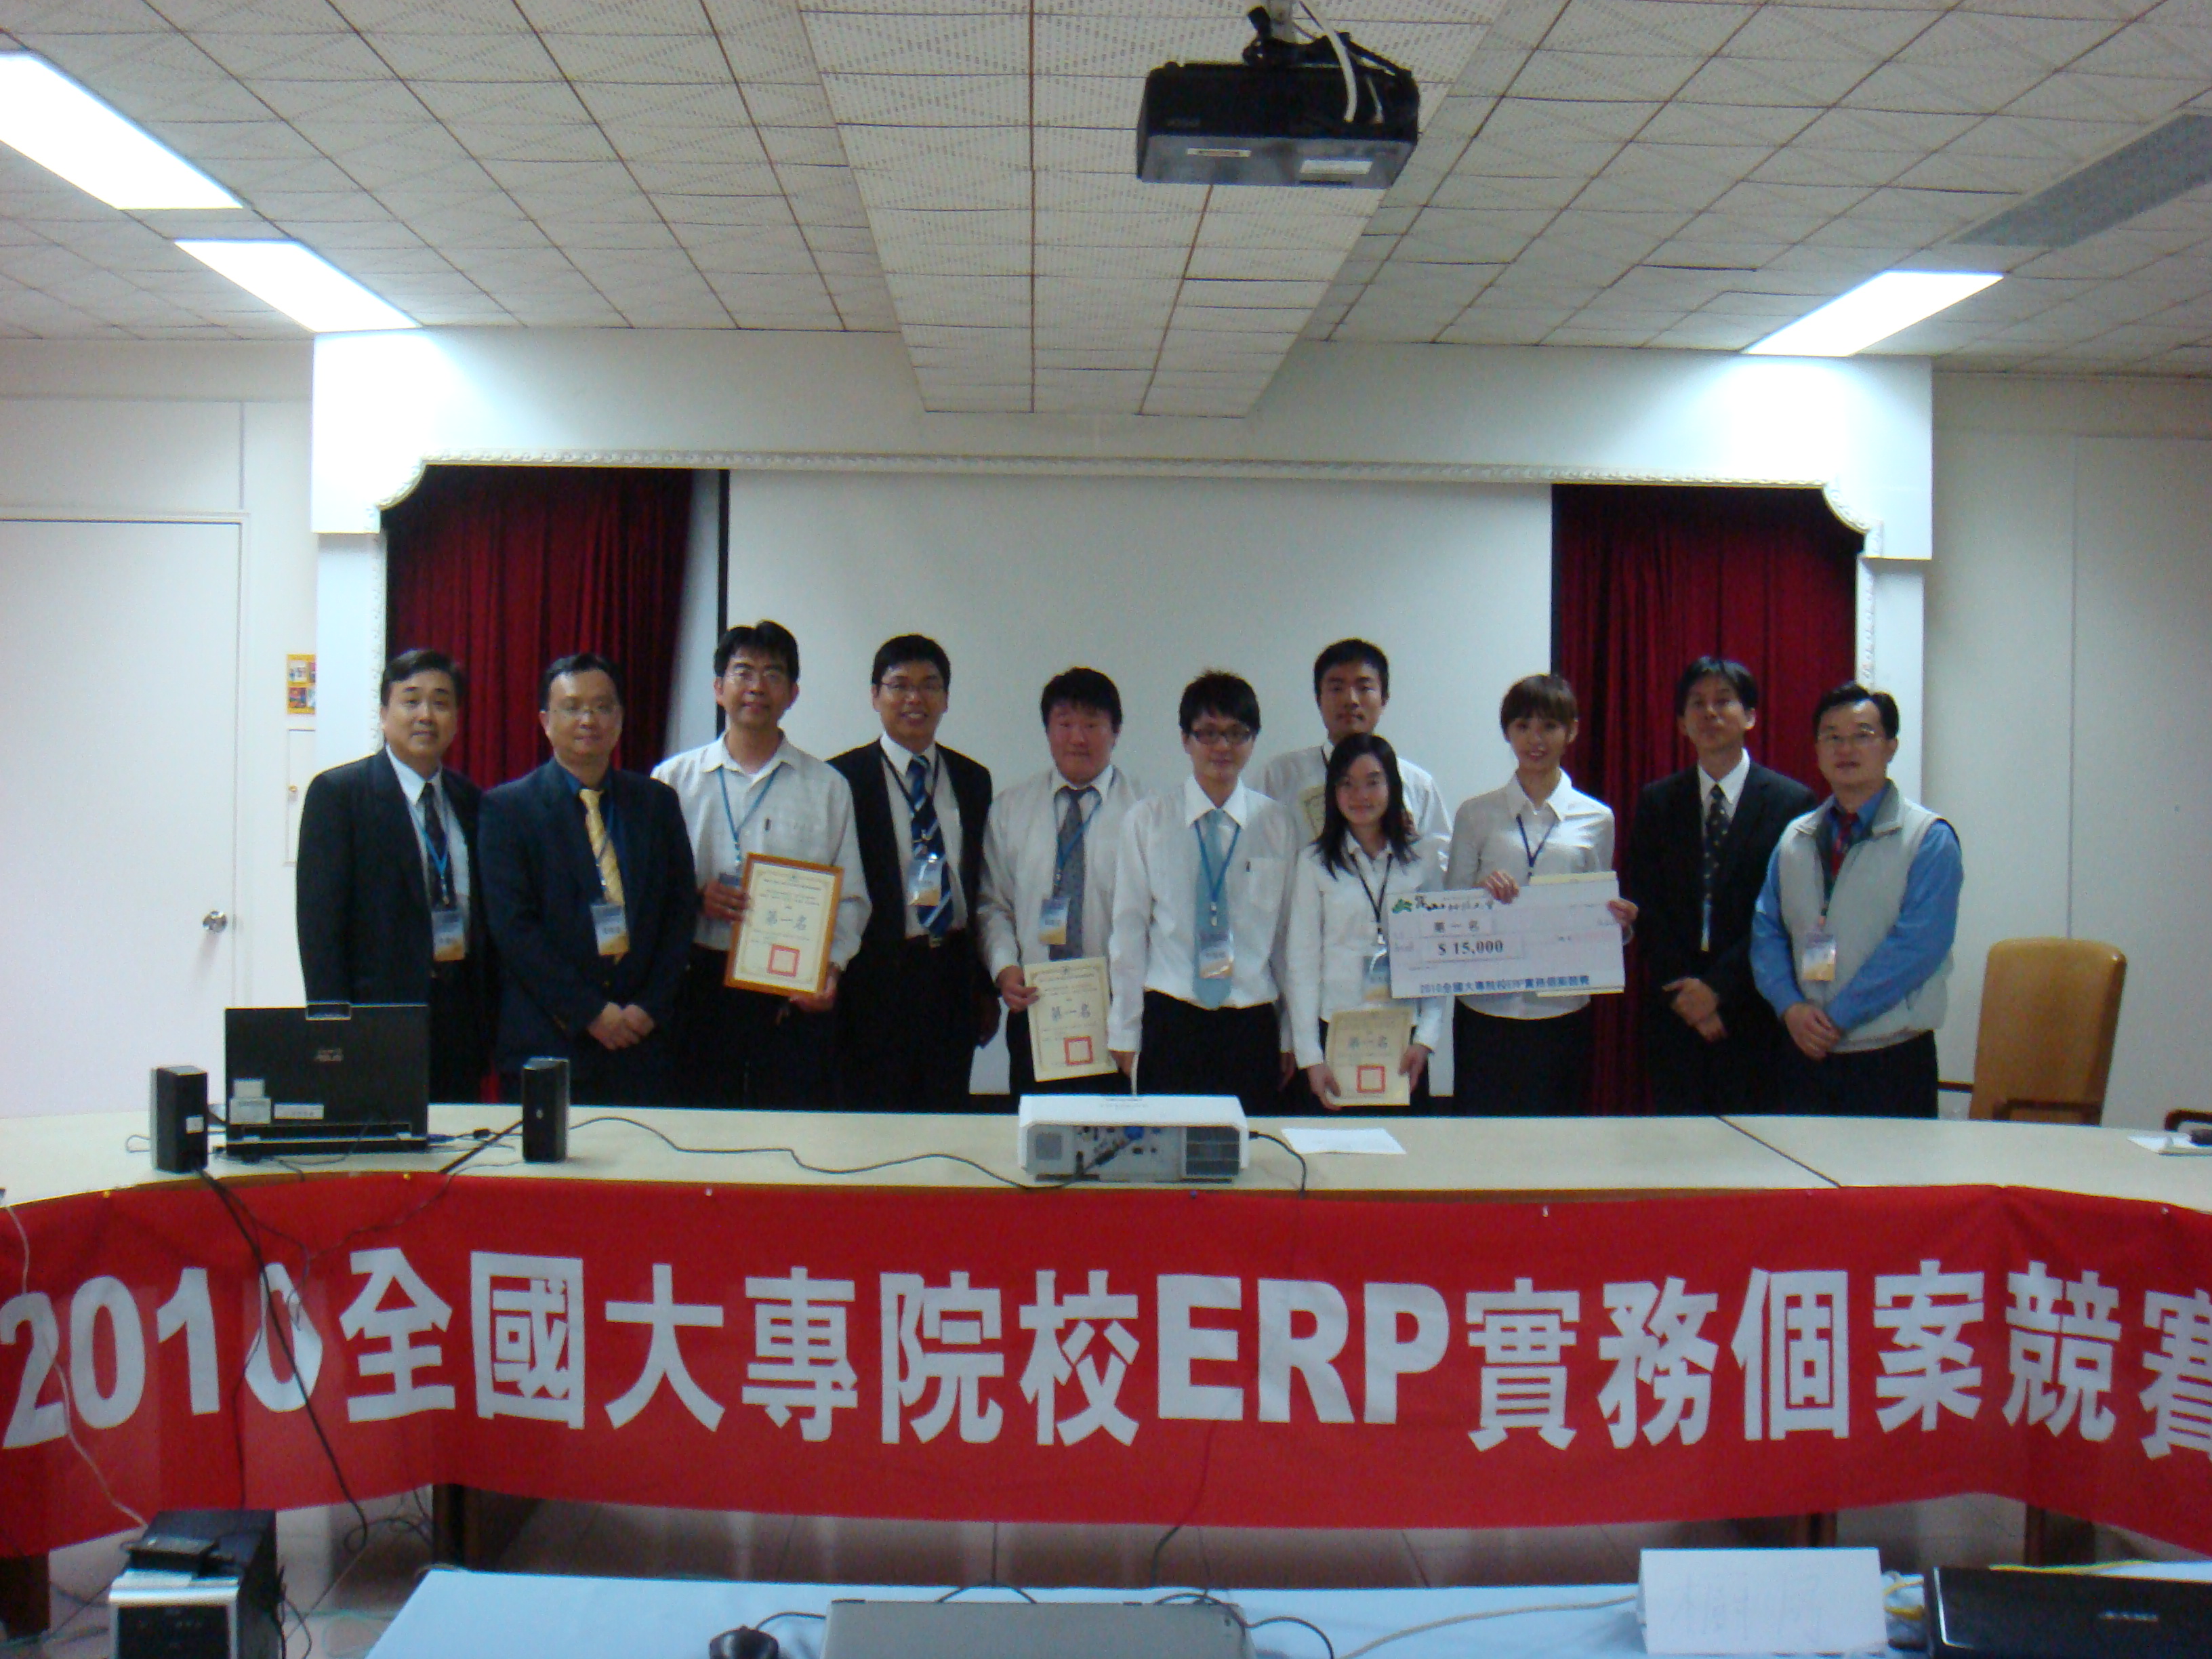 2010「全國大專院校ERP實務個案競賽ERP開發組第一名」頒獎照片